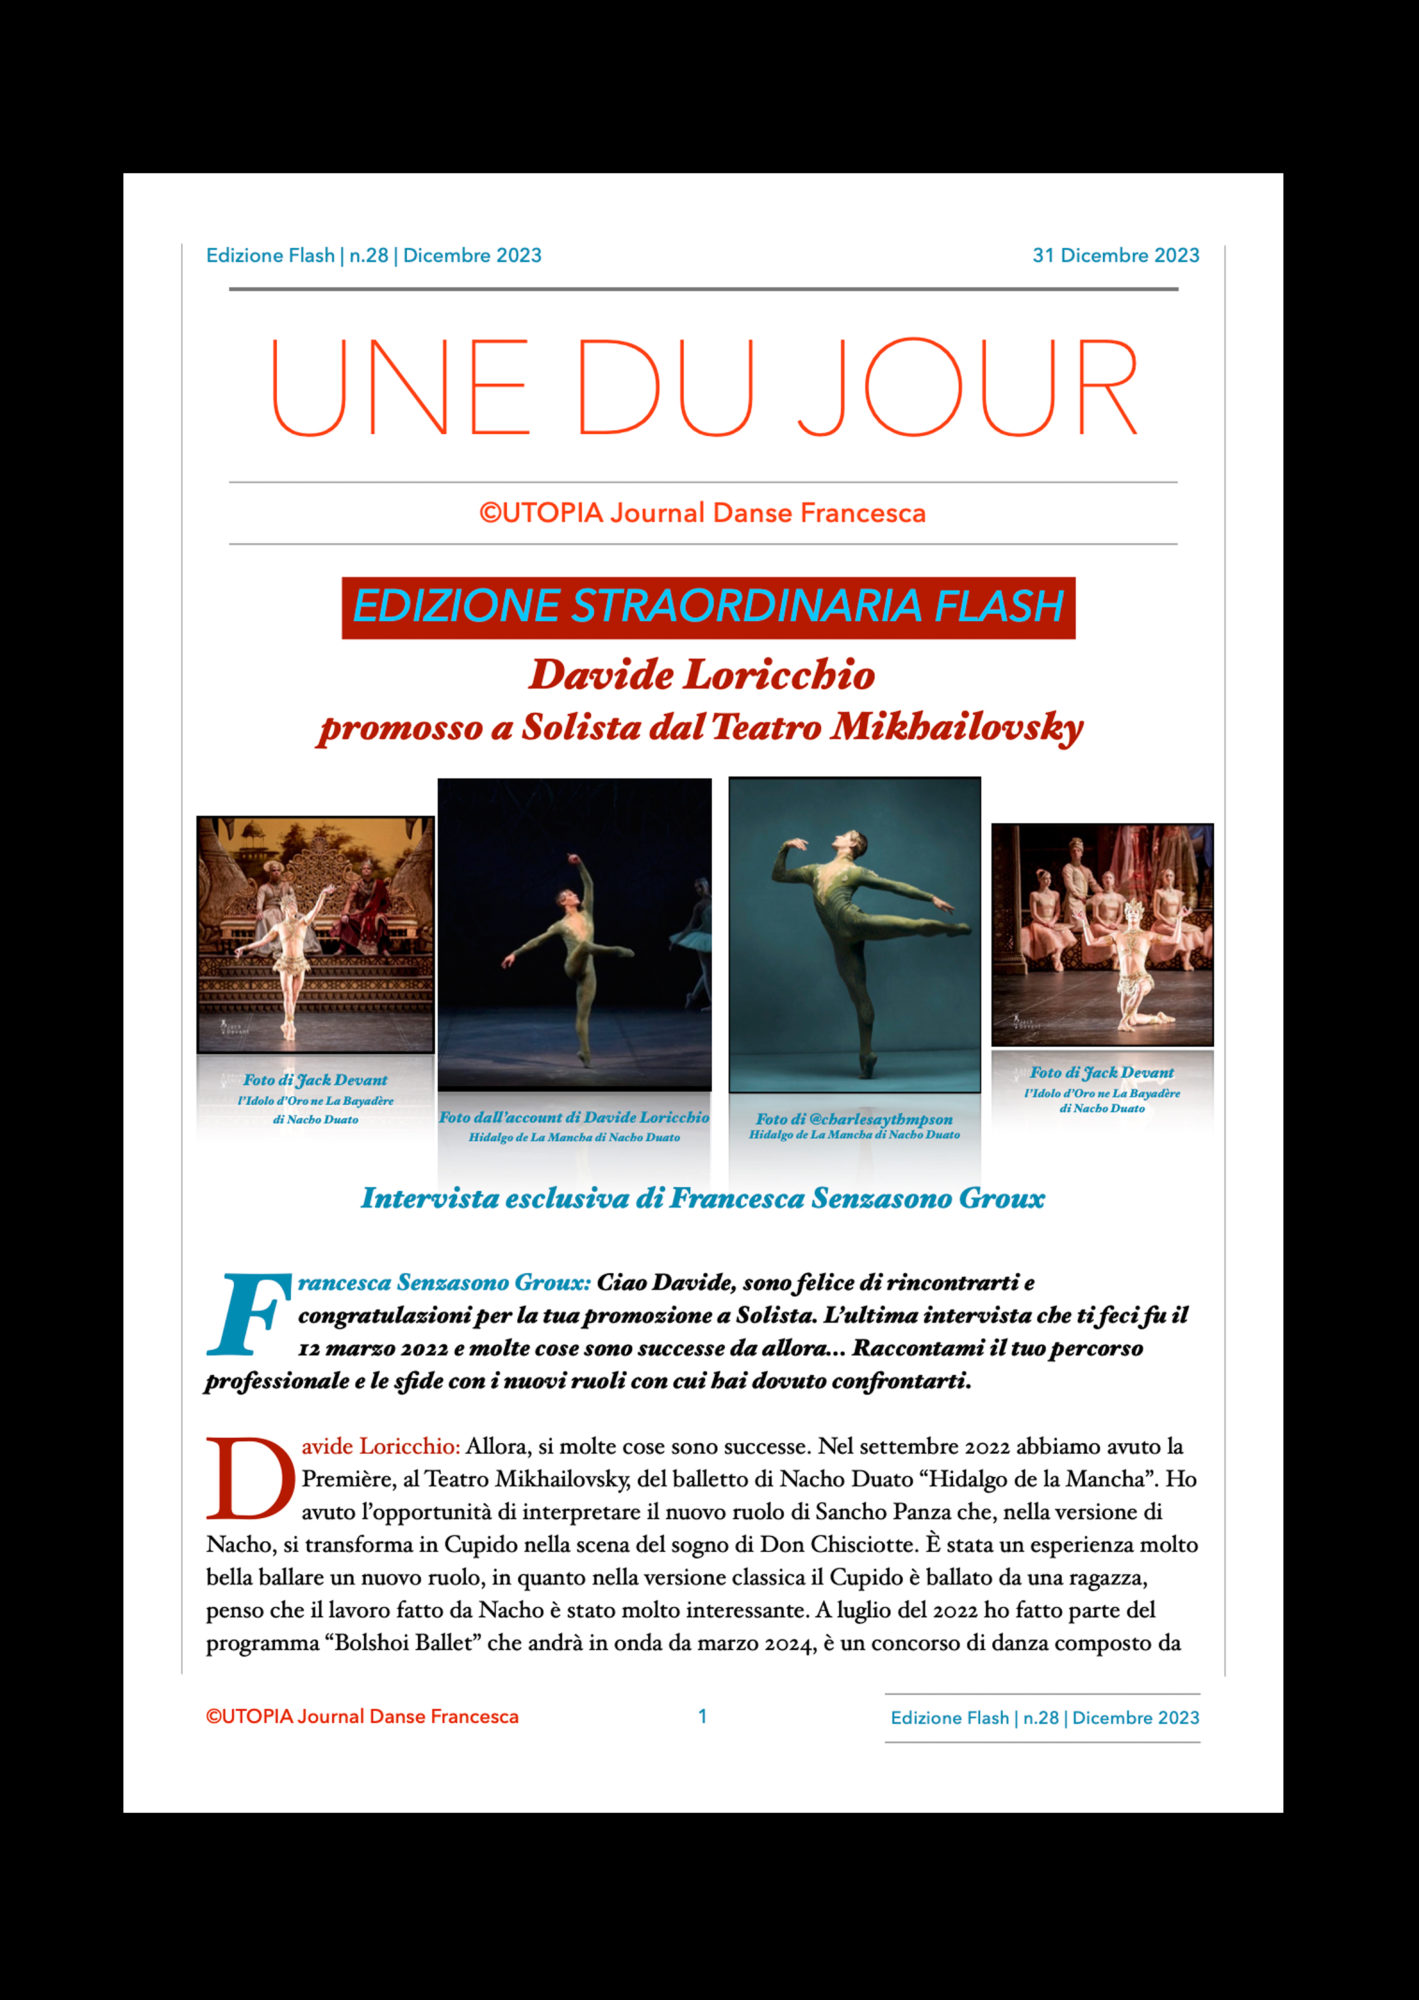 ©UTOPIA Journal Danse Edizione Straordinaria Flash n.28 31 Dicembre 2023 pagina 1